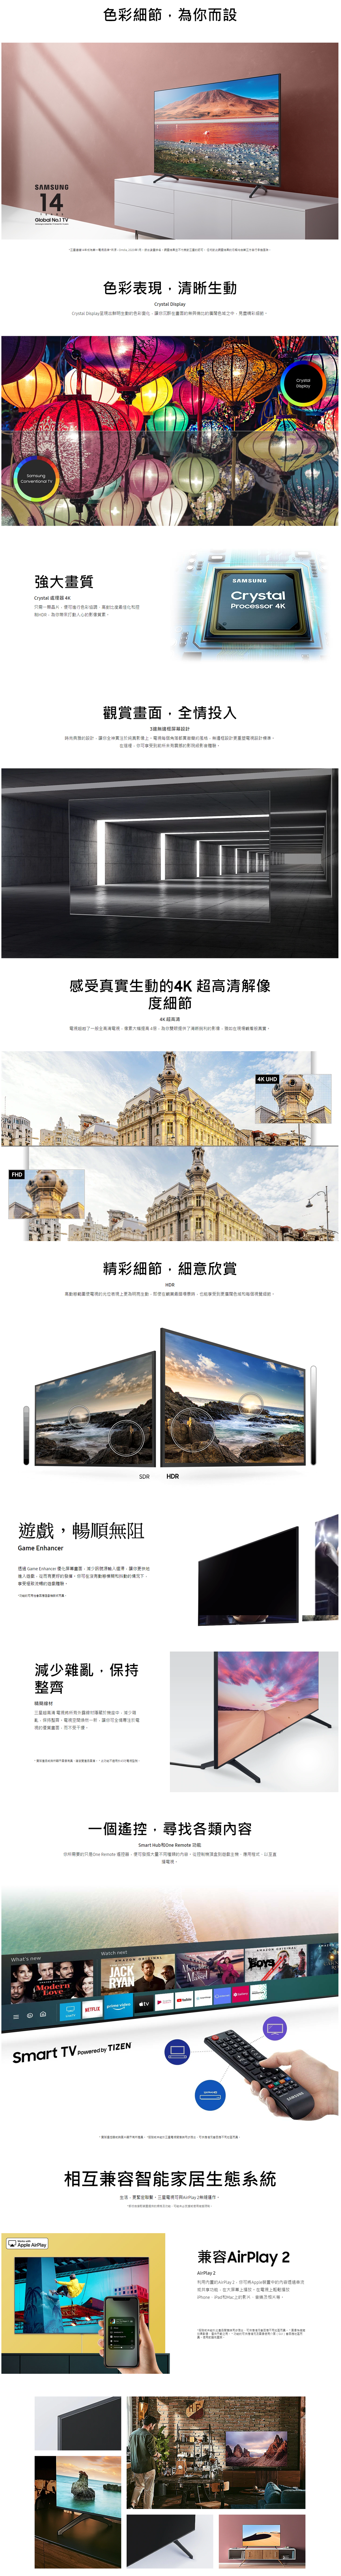 【已停產】Samsung 三星 UA43TU7000JXZK 43吋 4K 智能電視